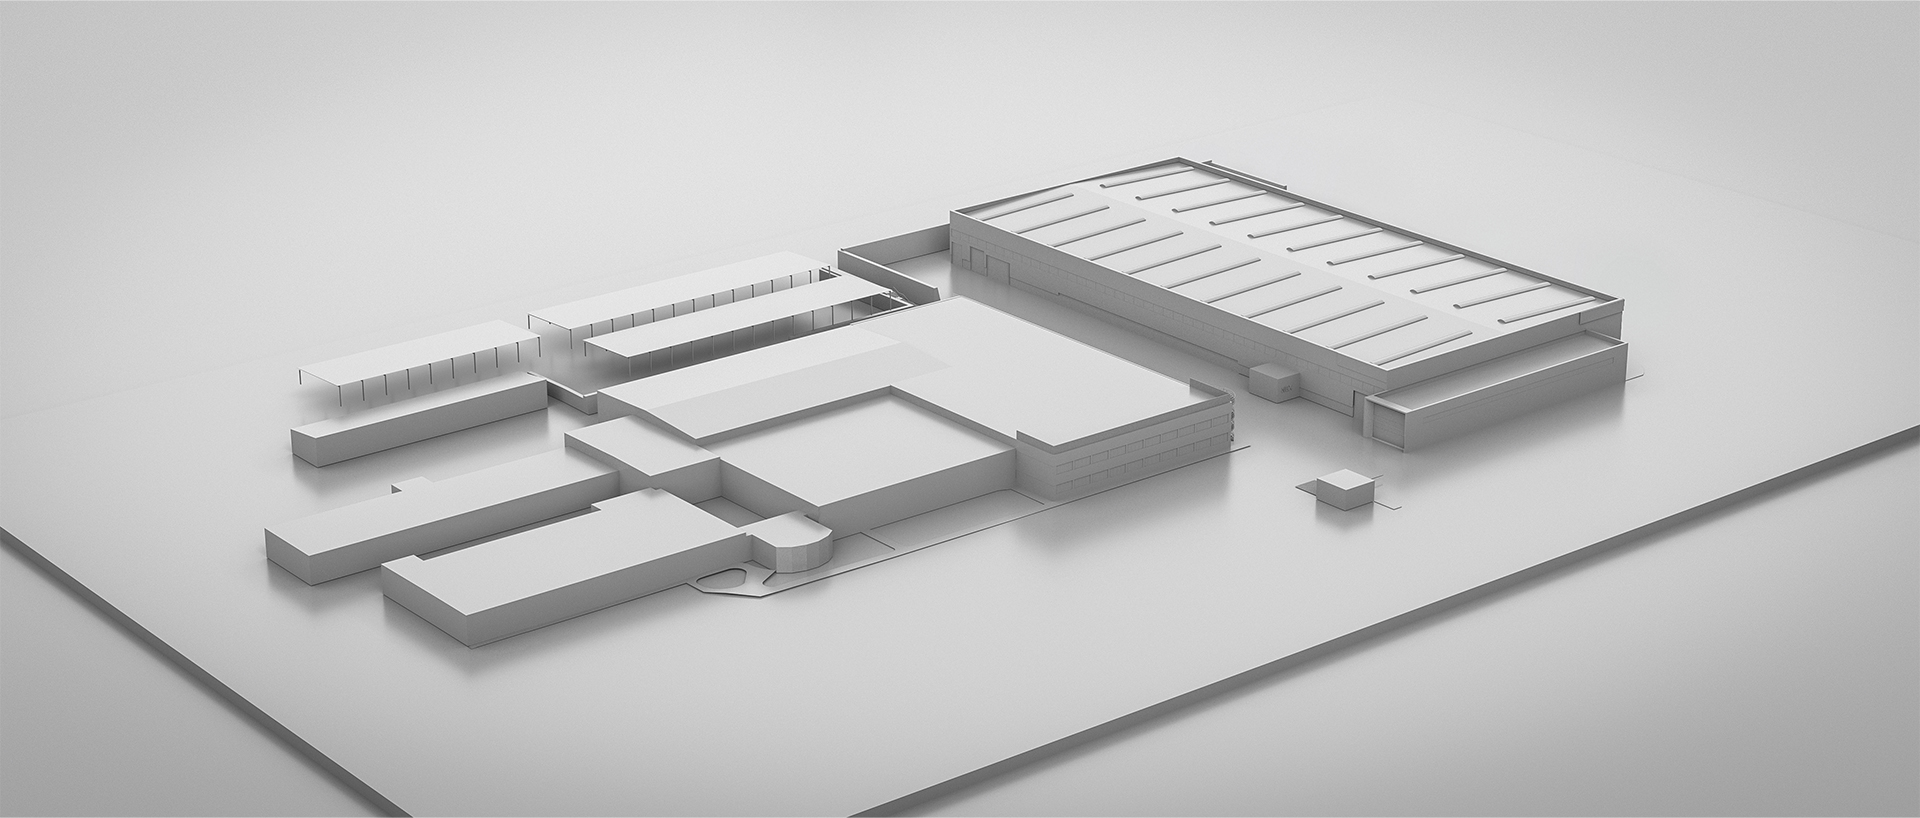 Perspective 3d aérienne en niveau de gris maquette blanche, le hall industriel se démarque parmis les autres volumes